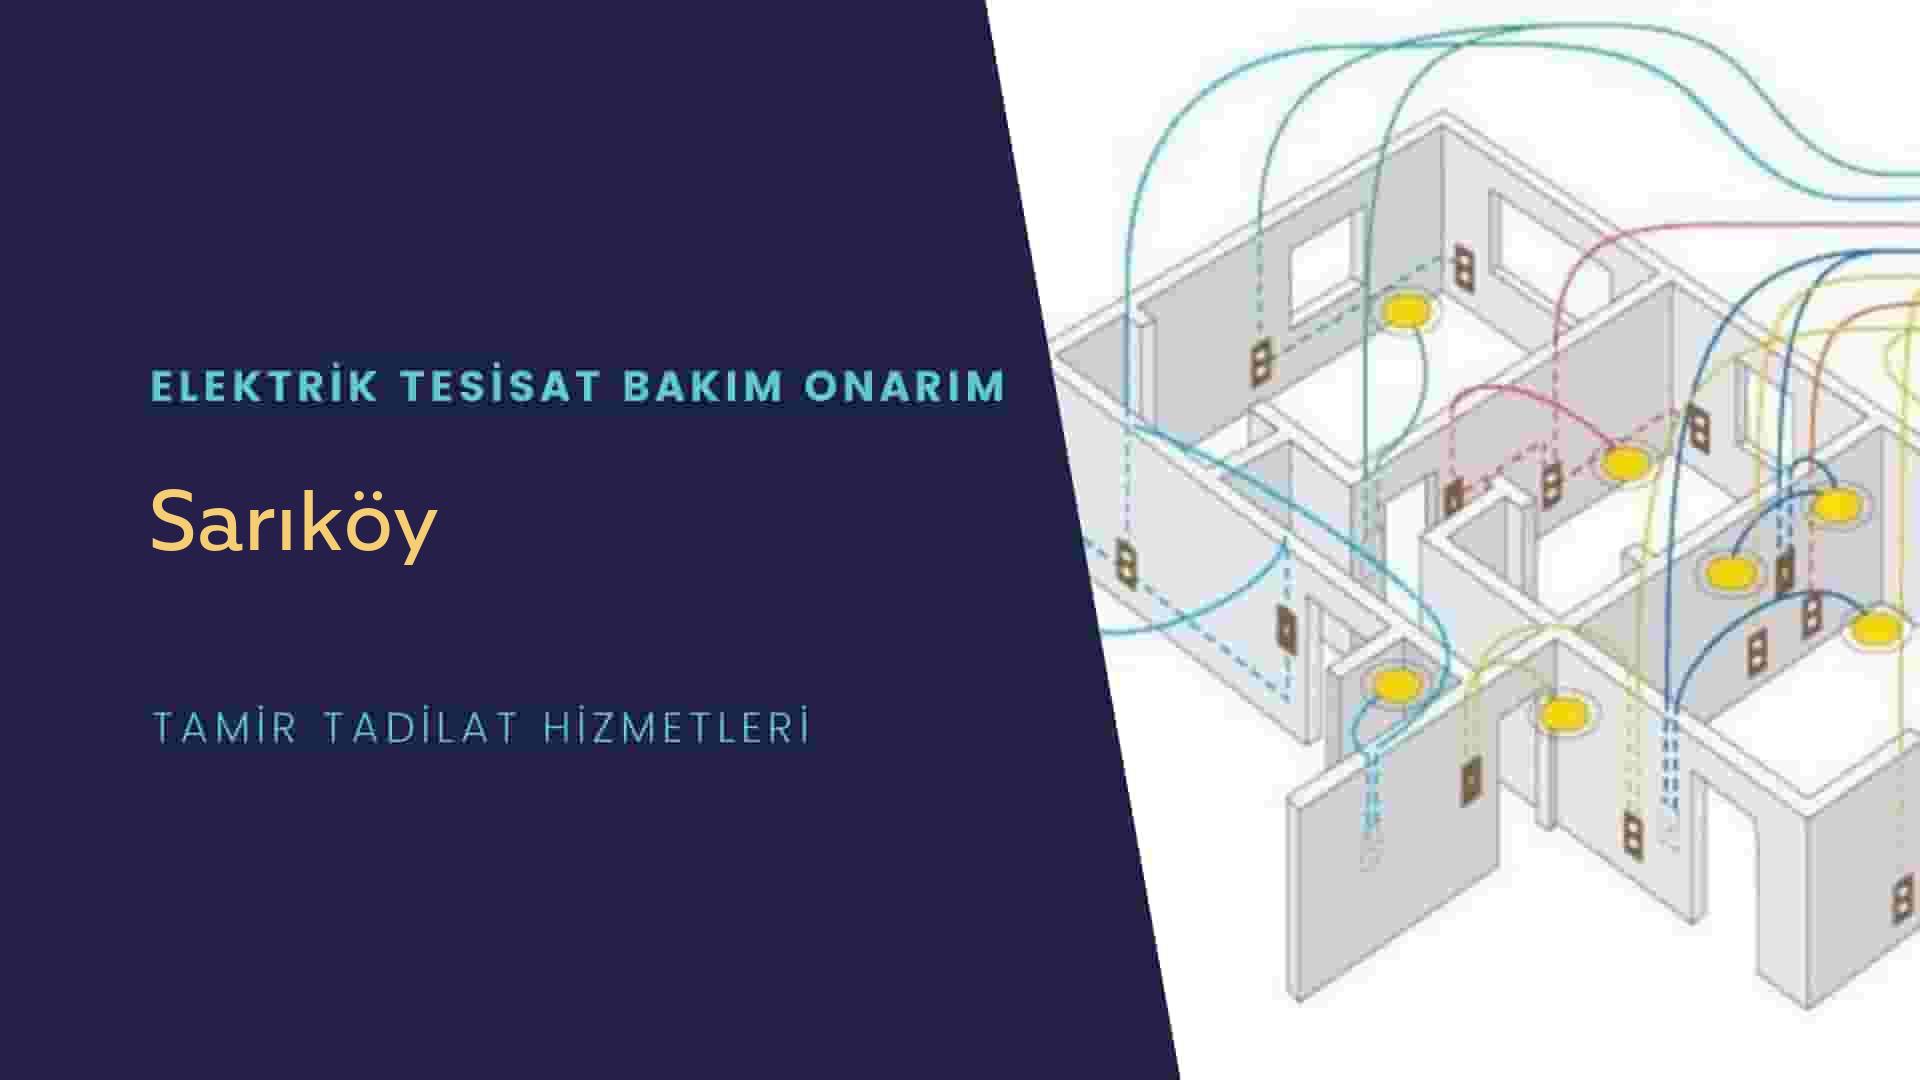 Sarıköy'de elektrik tesisatı ustalarımı arıyorsunuz doğru adrestenizi Sarıköy elektrik tesisatı ustalarımız 7/24 sizlere hizmet vermekten mutluluk duyar.